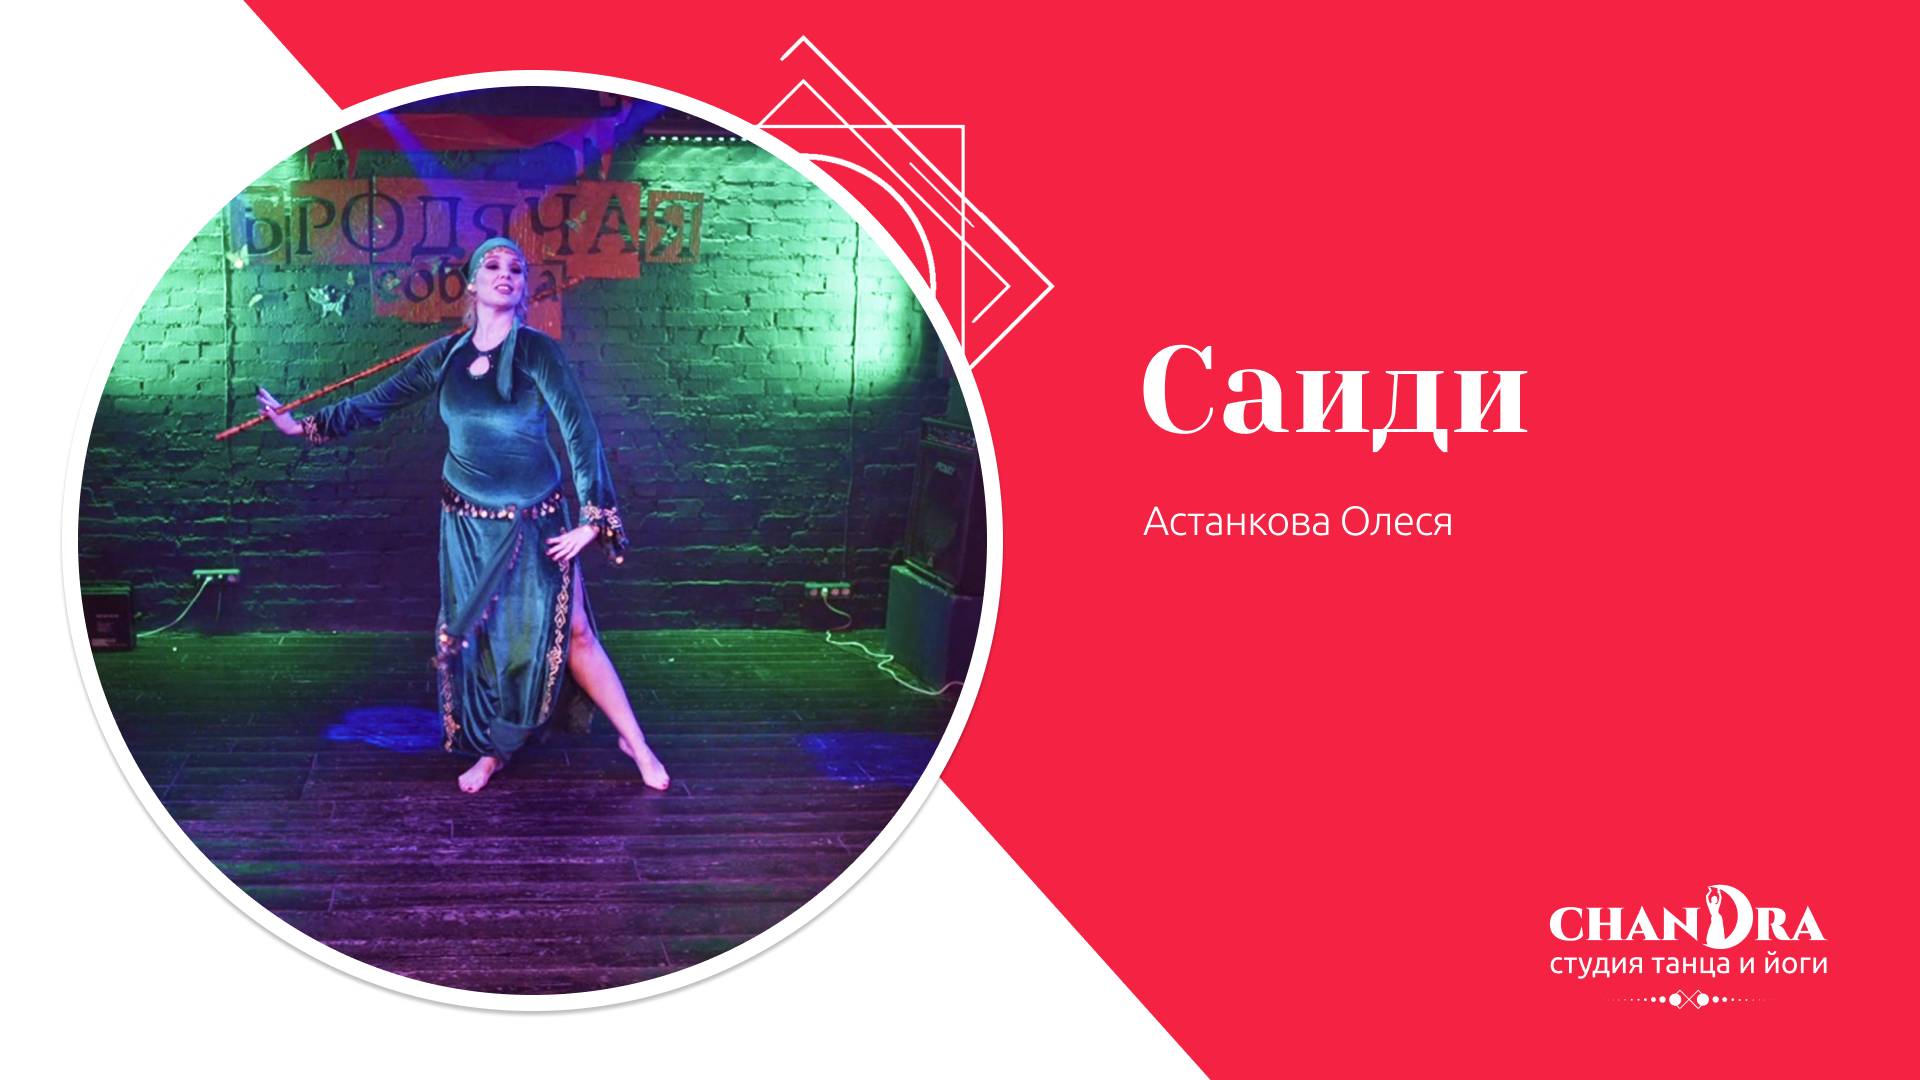 Студия танца и йоги в Новосибирске Chandra. Отчетный концерт 2024: Саиди, Астанкова Олеся